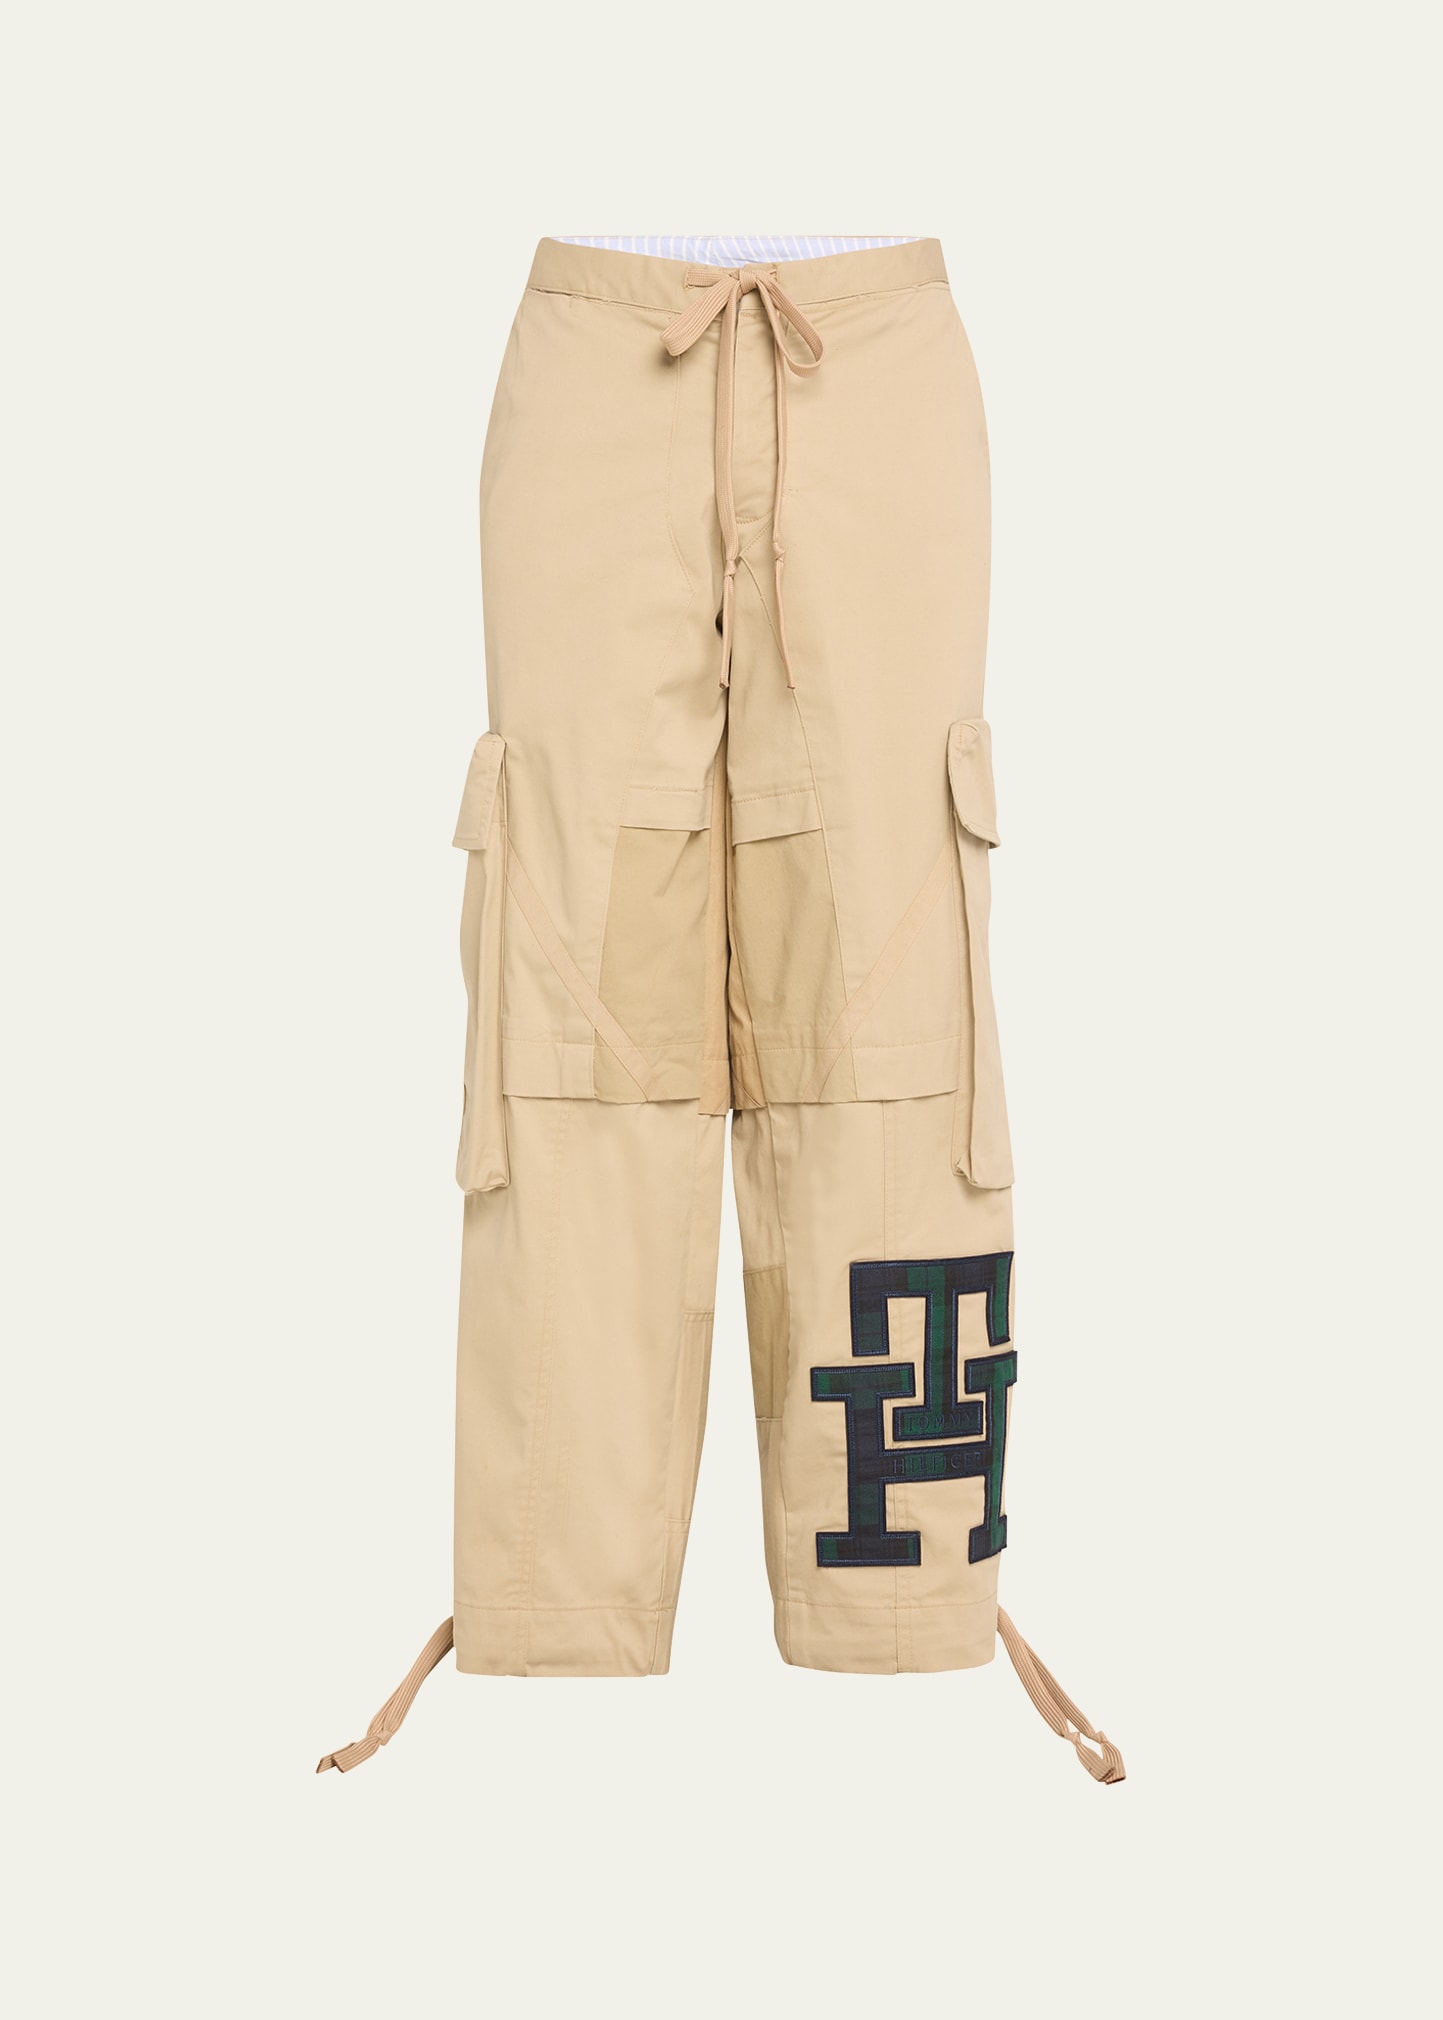 Greg Lauren X Tommy Hilfiger Men's Wide-leg Cargo Chino Pants In Multi